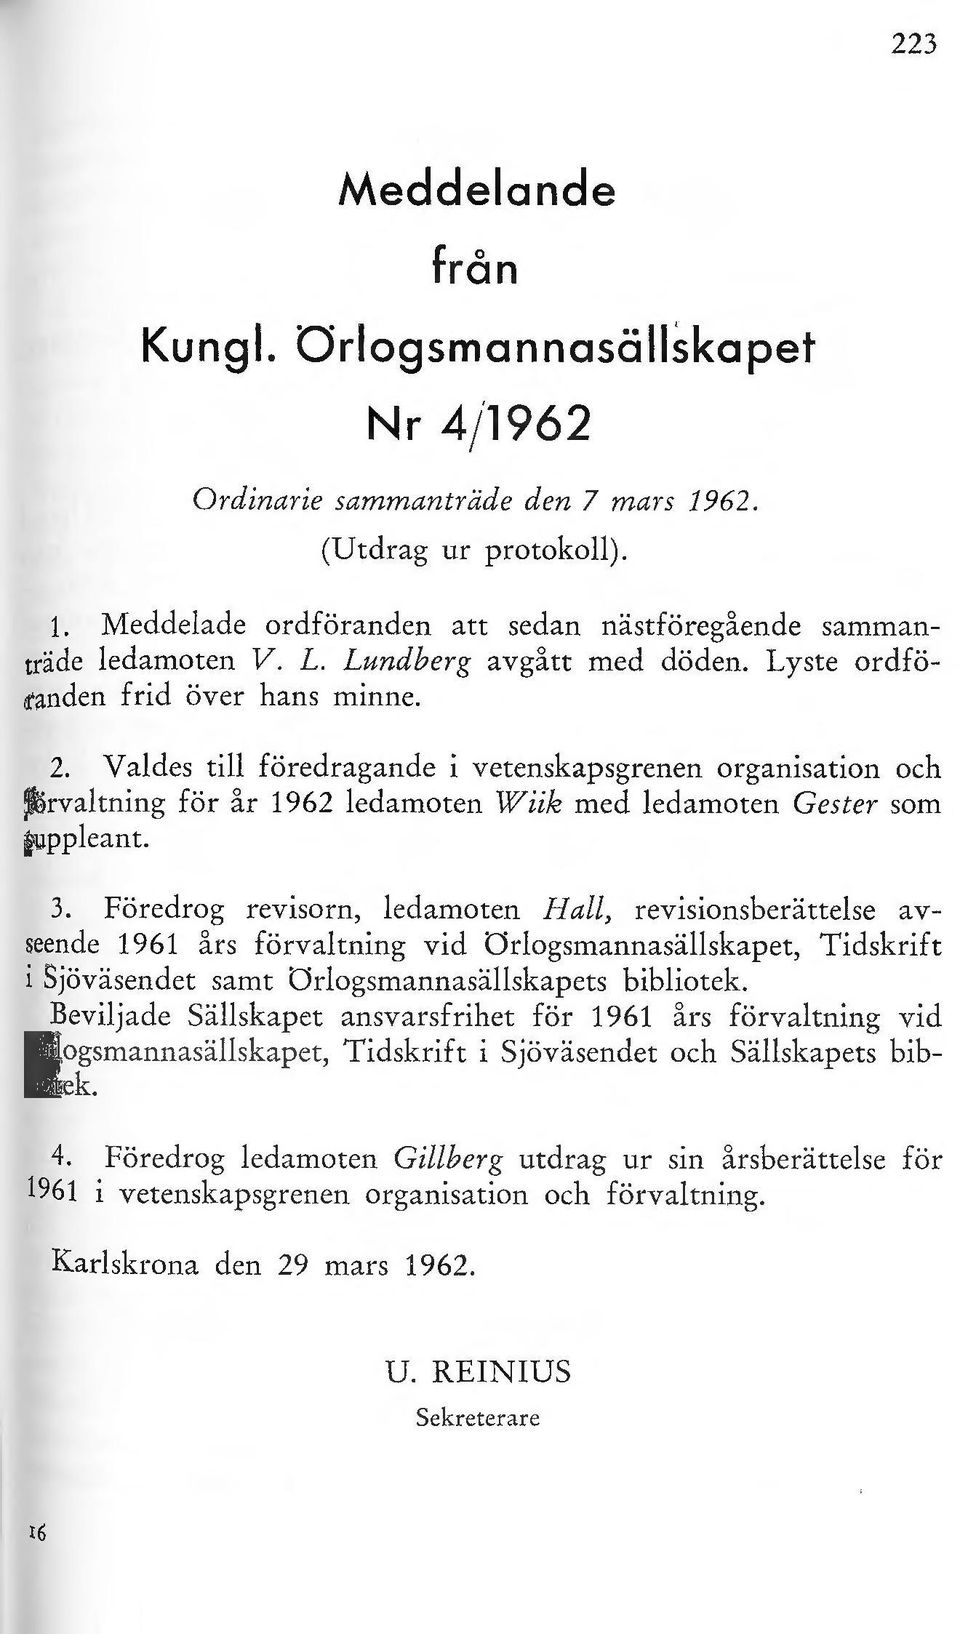 Föredrg revisrn, edamten a, revisinsberättese avseende 1961 års förvatning vid Ogsmannasäskapet, Tidskrift i Sjöväsendet samt Ogsmannasäskapets bibitek.